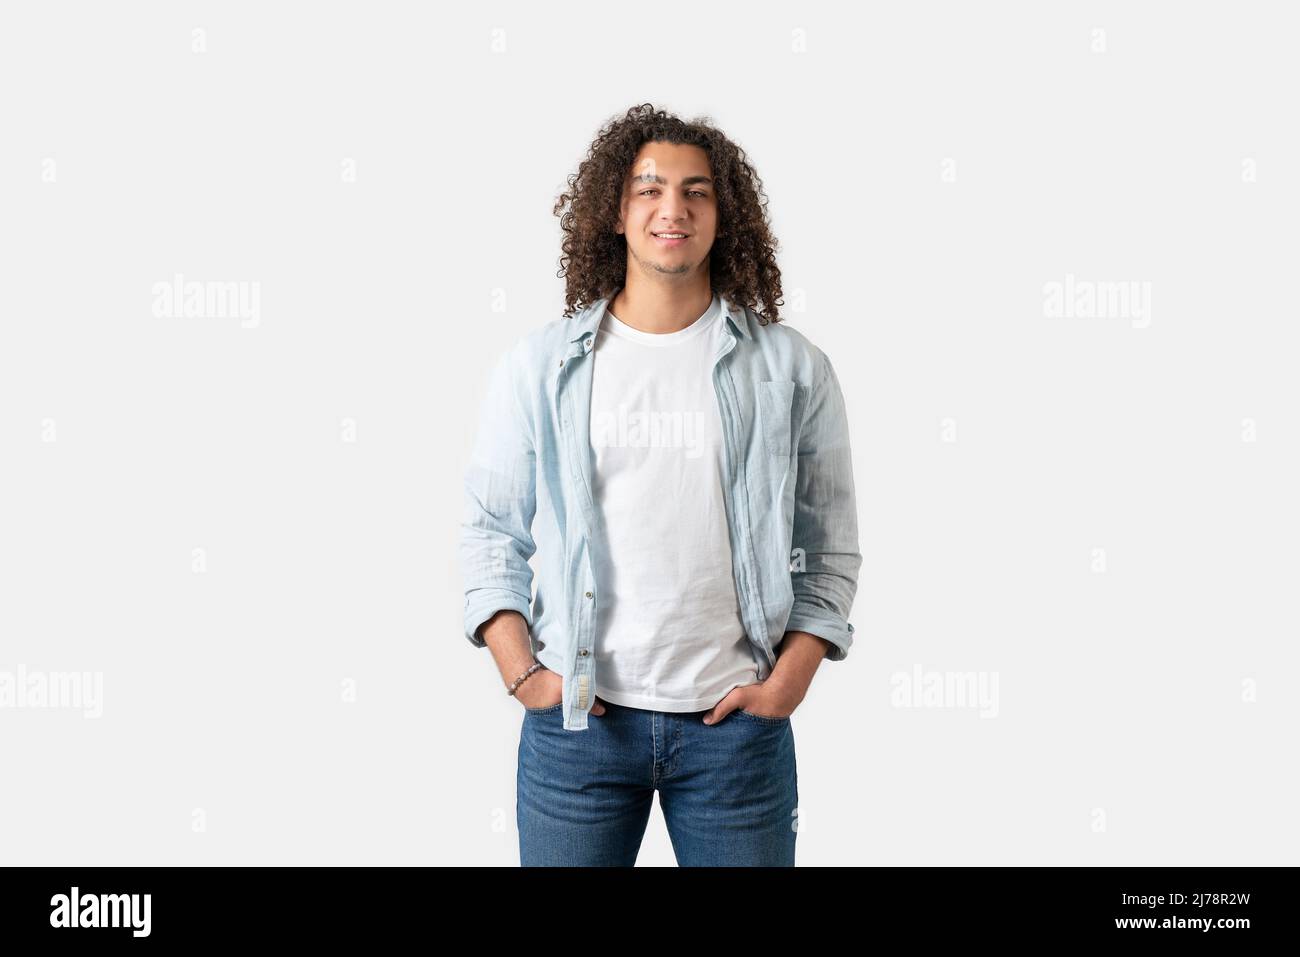 Primo piano di giovane uomo di buon aspetto con capelli lunghi e ricci sta posando, isolato su sfondo bianco. Foto di alta qualità Foto Stock